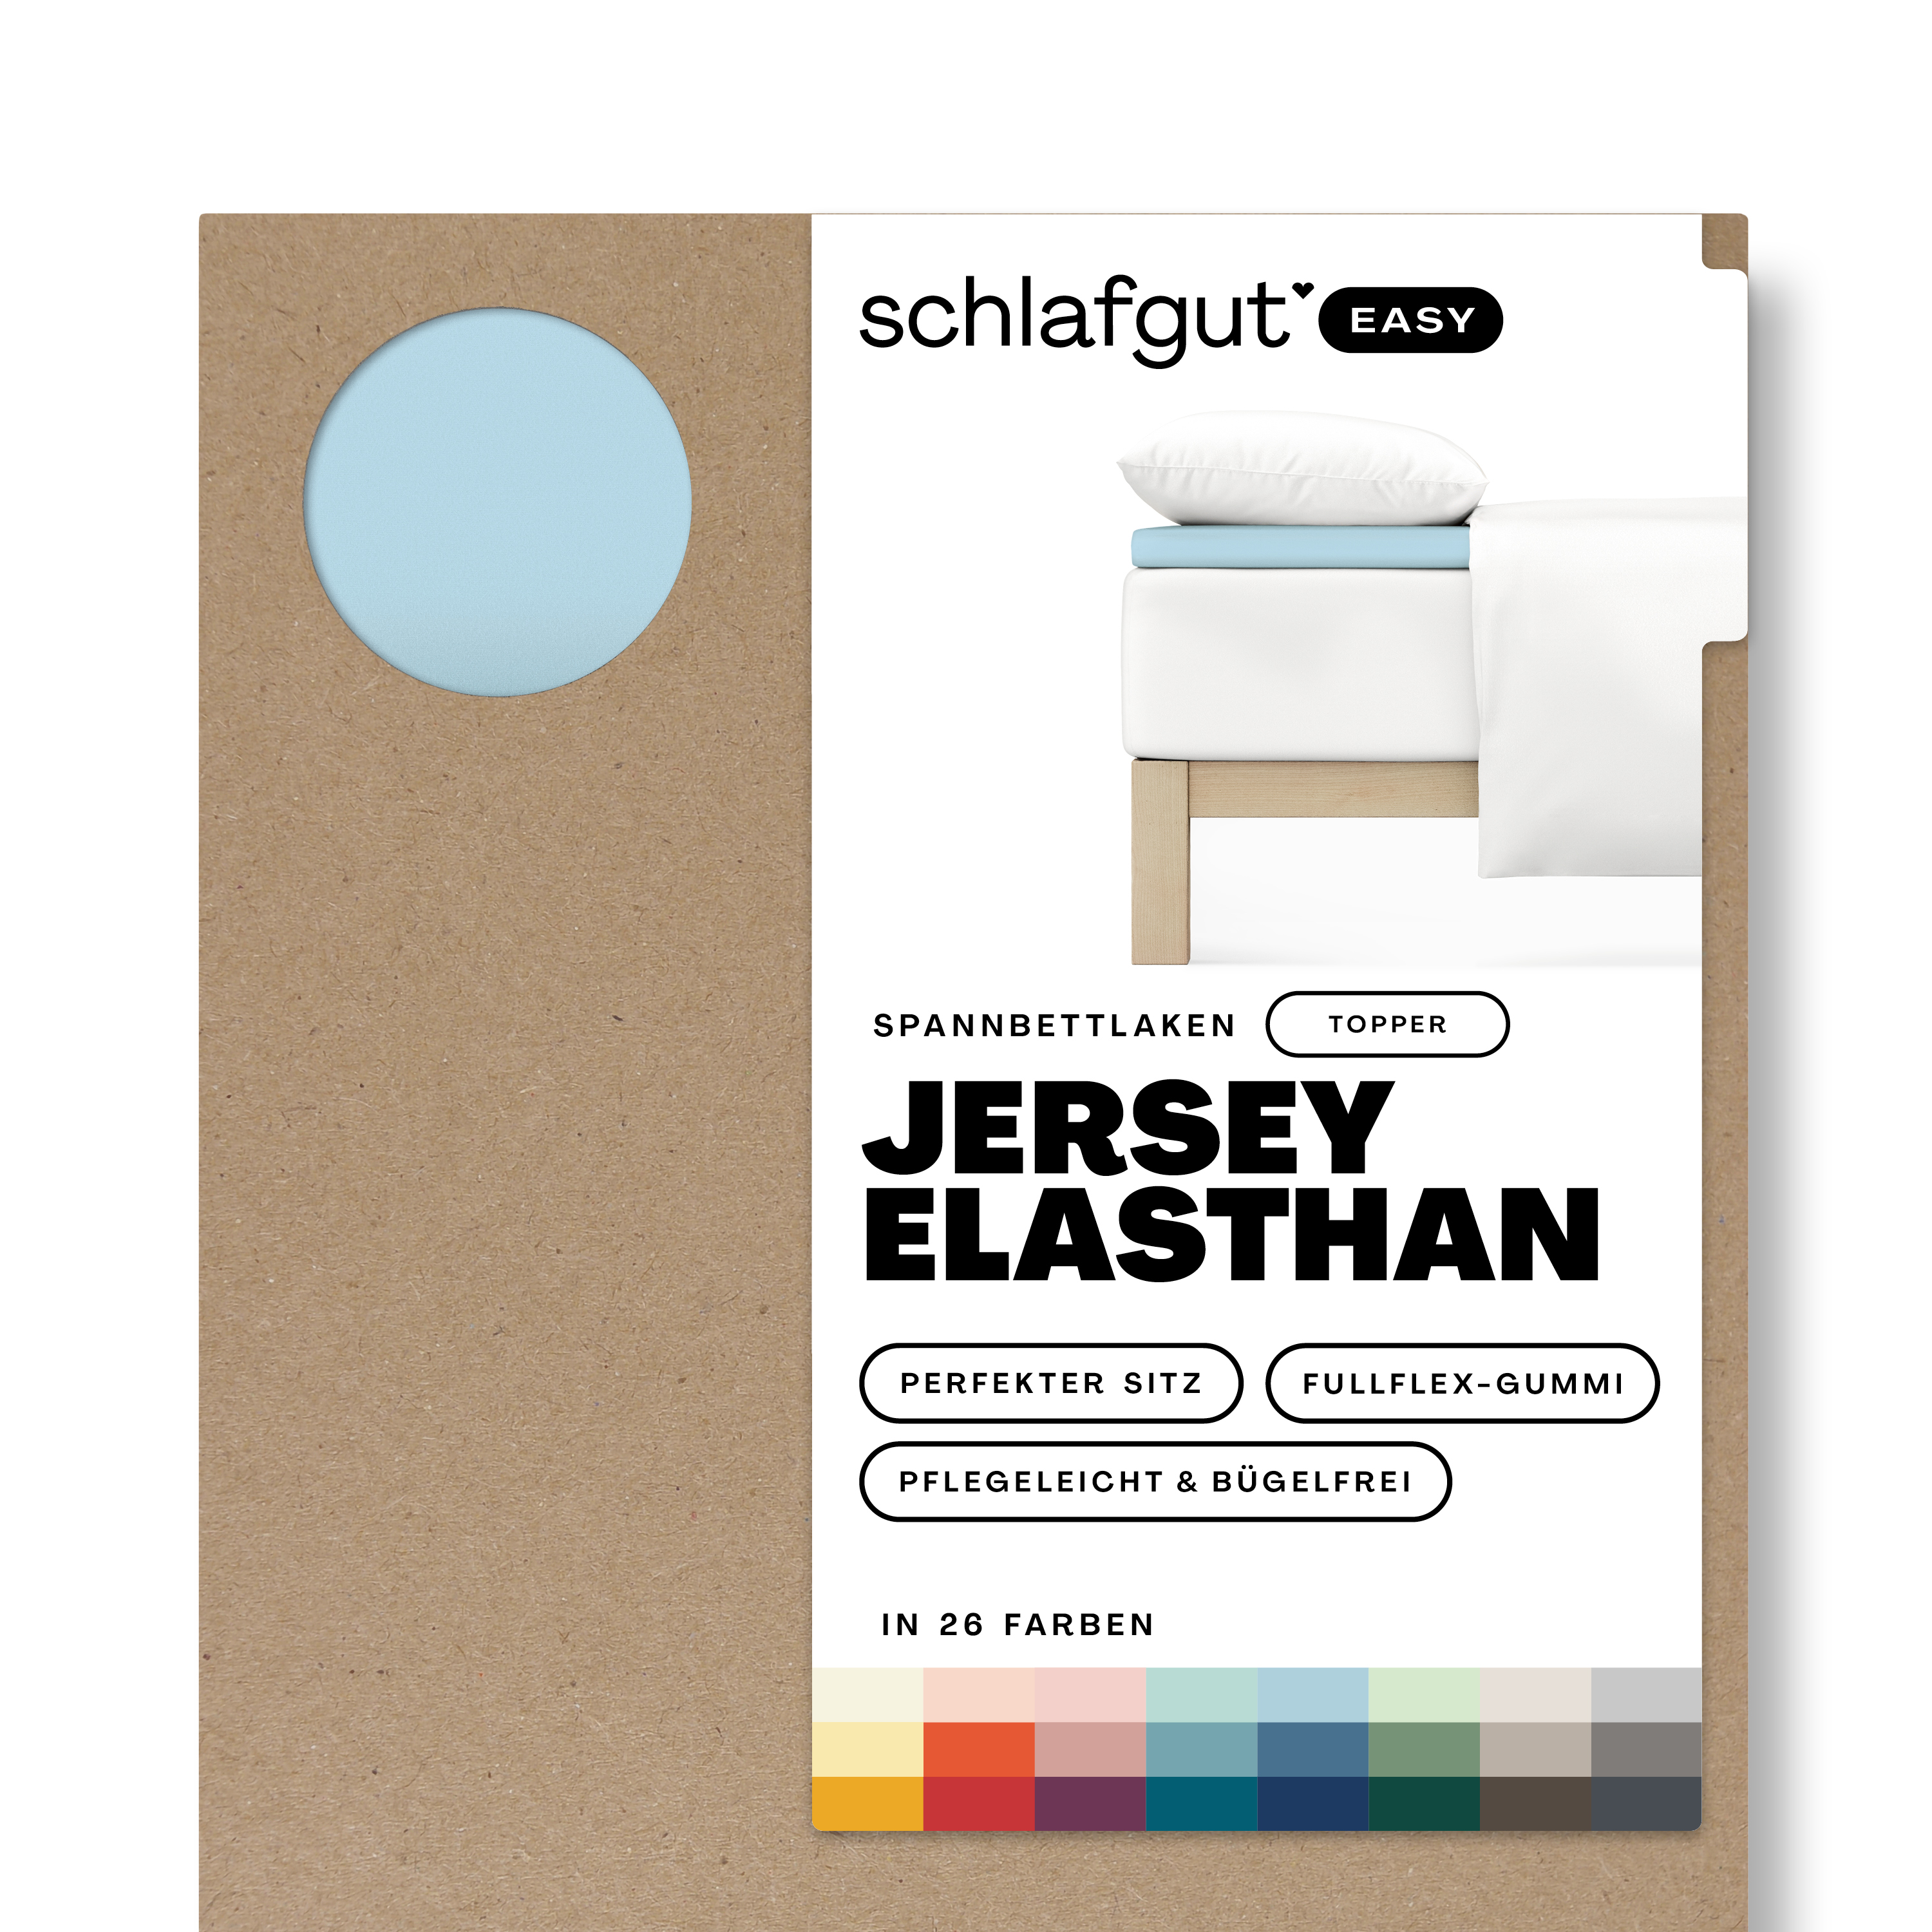 Das Produktbild vom Spannbettlaken der Reihe Easy Elasthan Topper in Farbe blue light von Schlafgut